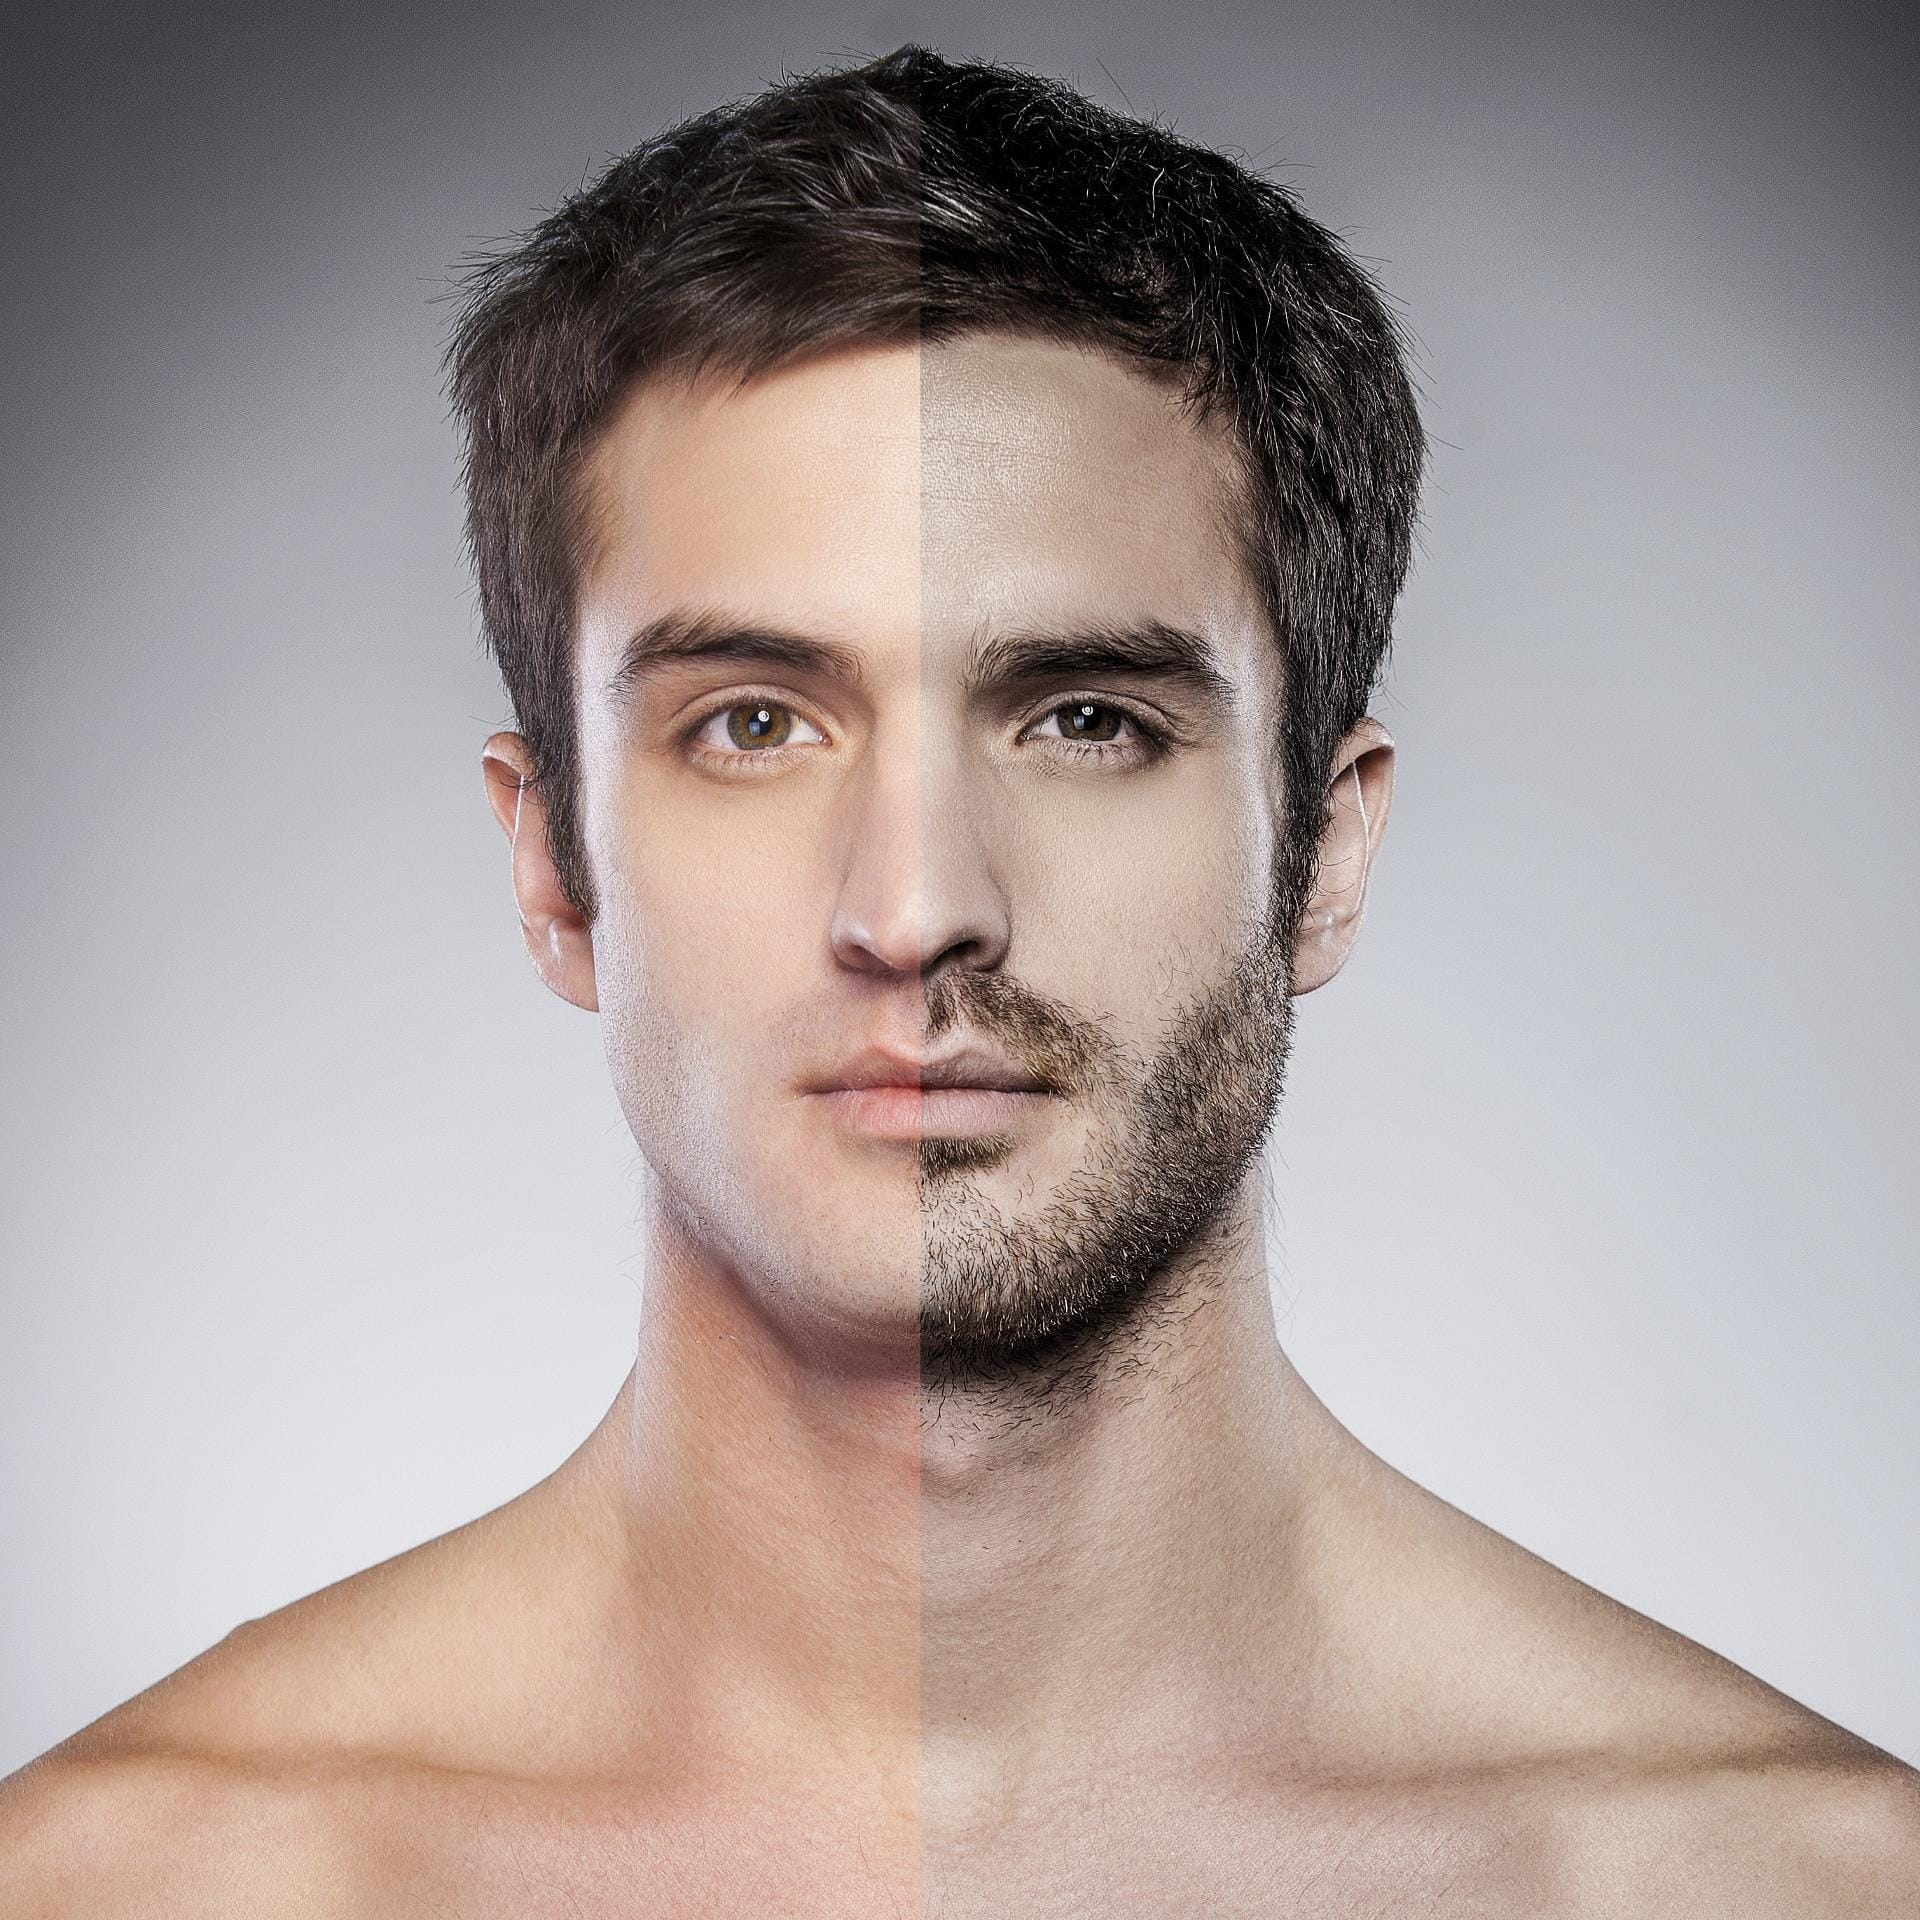 Bärtige Männer gelten laut einer Kieler Studie als sympathischer im Vergleich zu glatt rasierten.